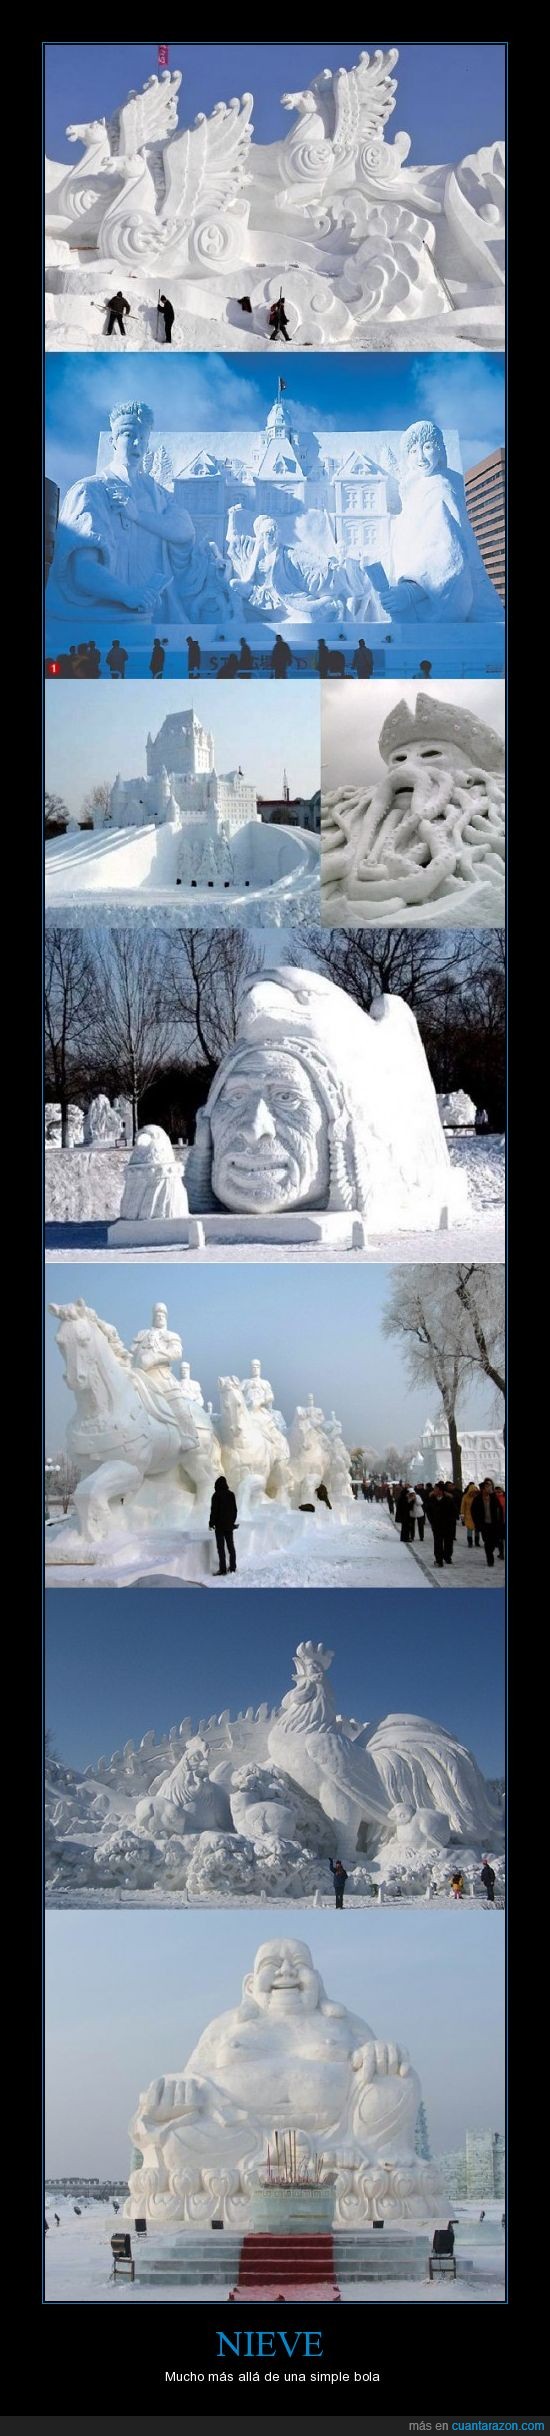 nieve,arte,esculturas,asombroso